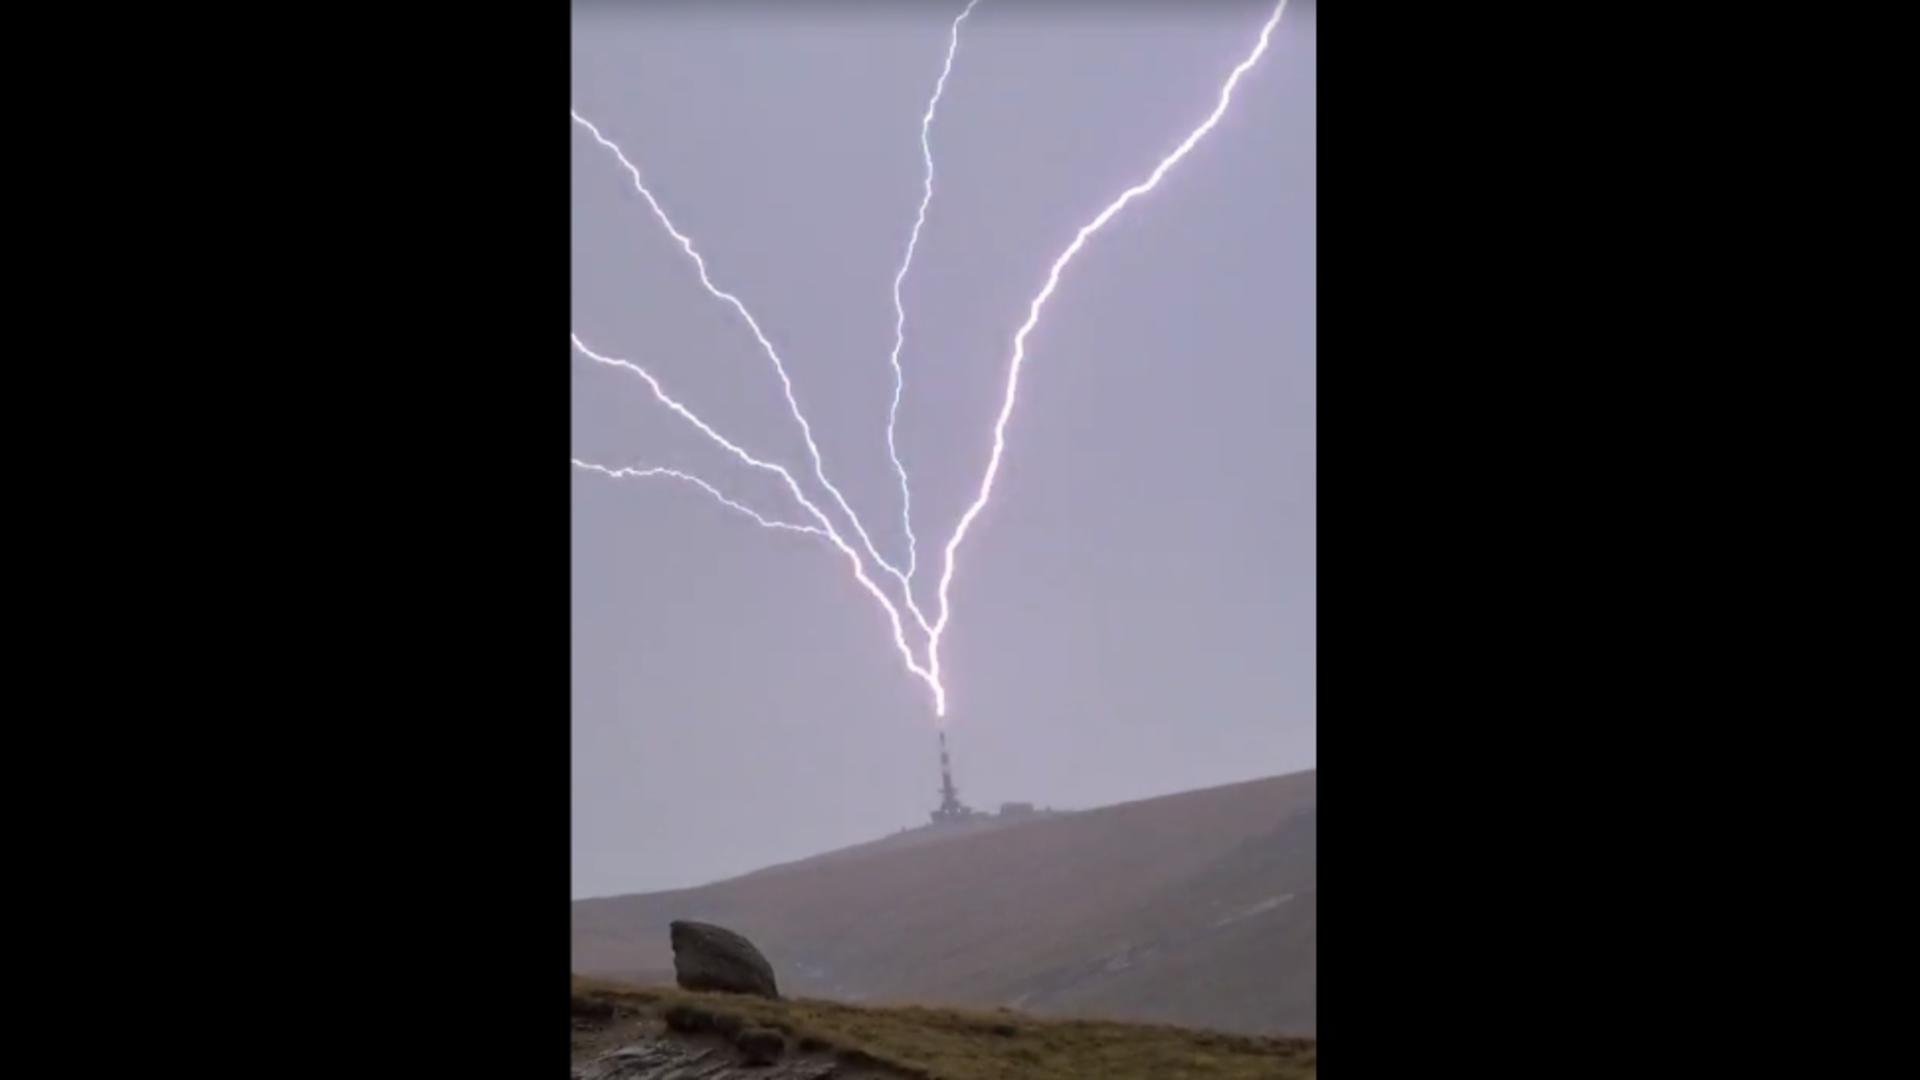 S-a aprins văzduhul în Bucegi: fenomenul „upward lightning” a creat un spectacol impresionant deasupra Vârfului Coștila